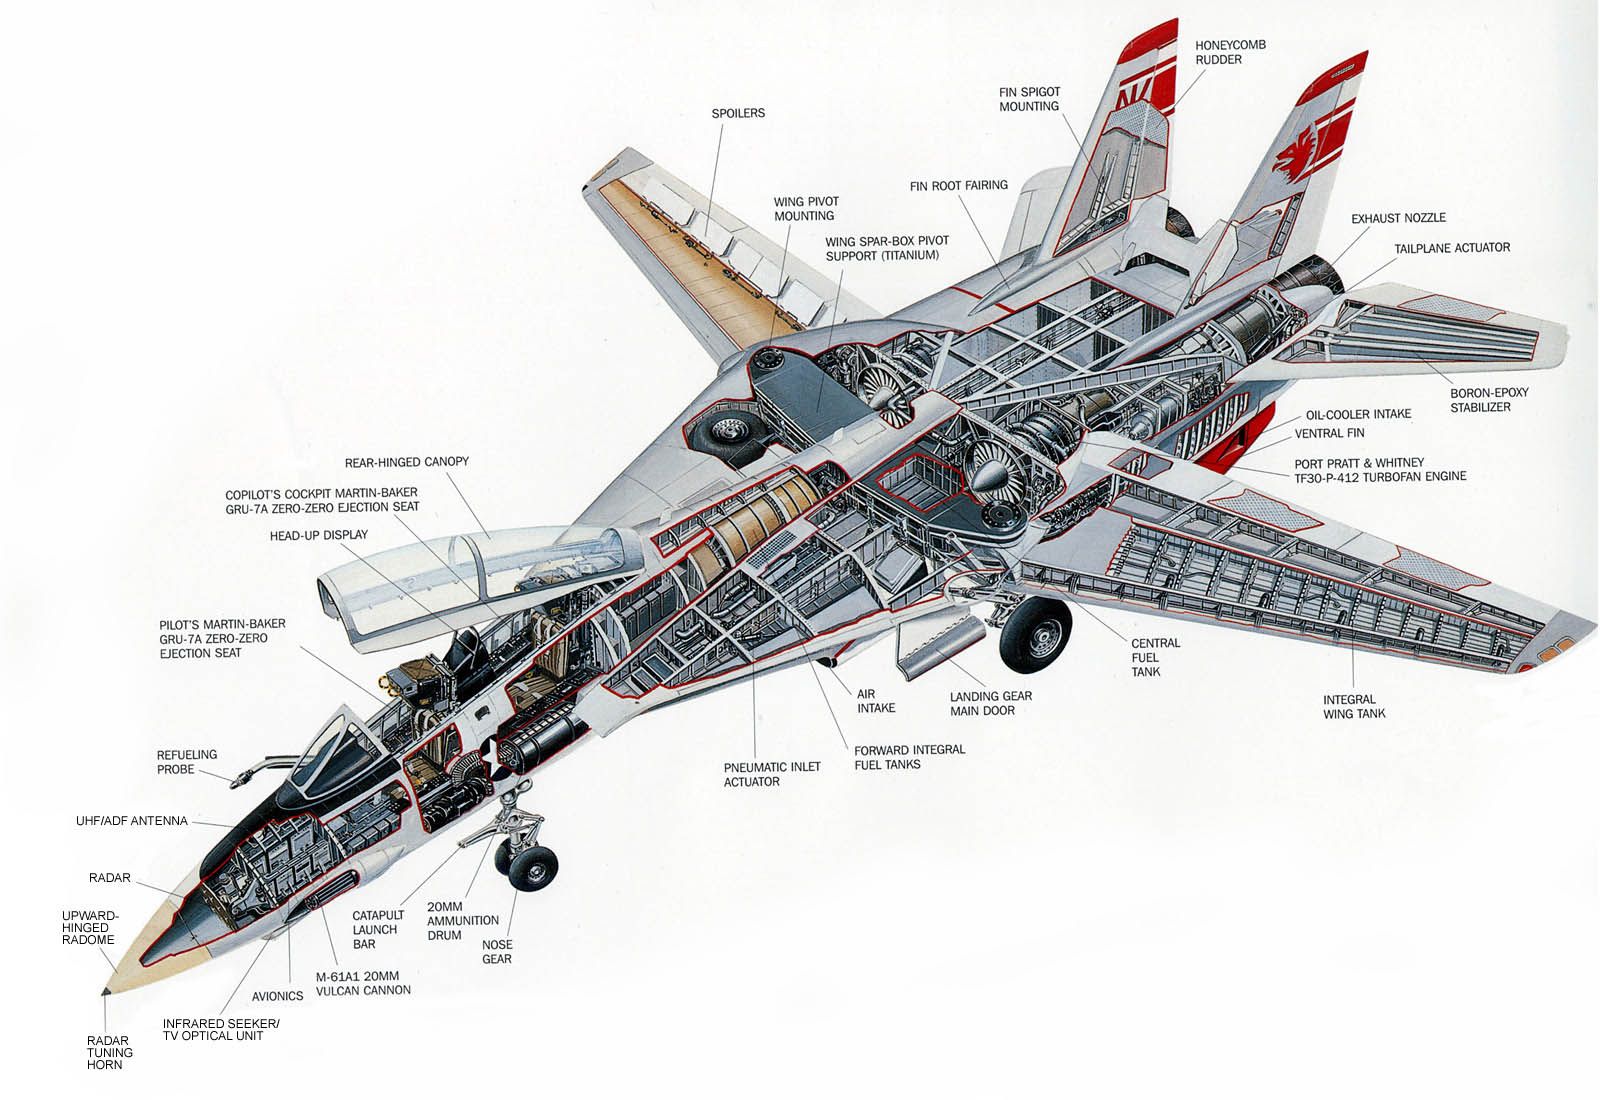 Grumman F-14 Tomcat cutaway